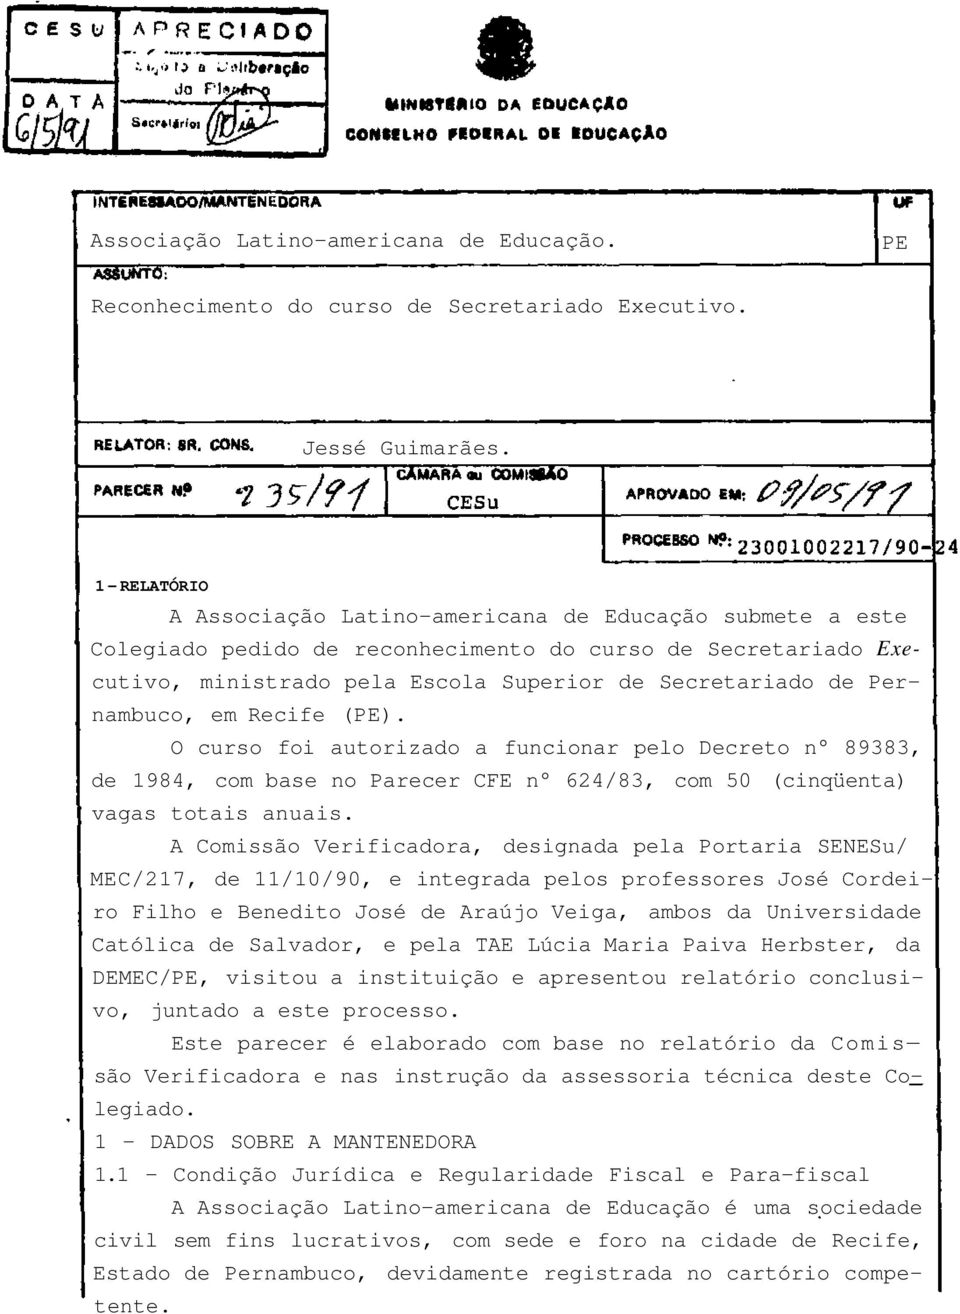 Pernambuco, em Recife (PE). O curso foi autorizado a funcionar pelo Decreto n 89383, de 1984, com base no Parecer CFE n 624/83, com 50 (cinqüenta) vagas totais anuais.